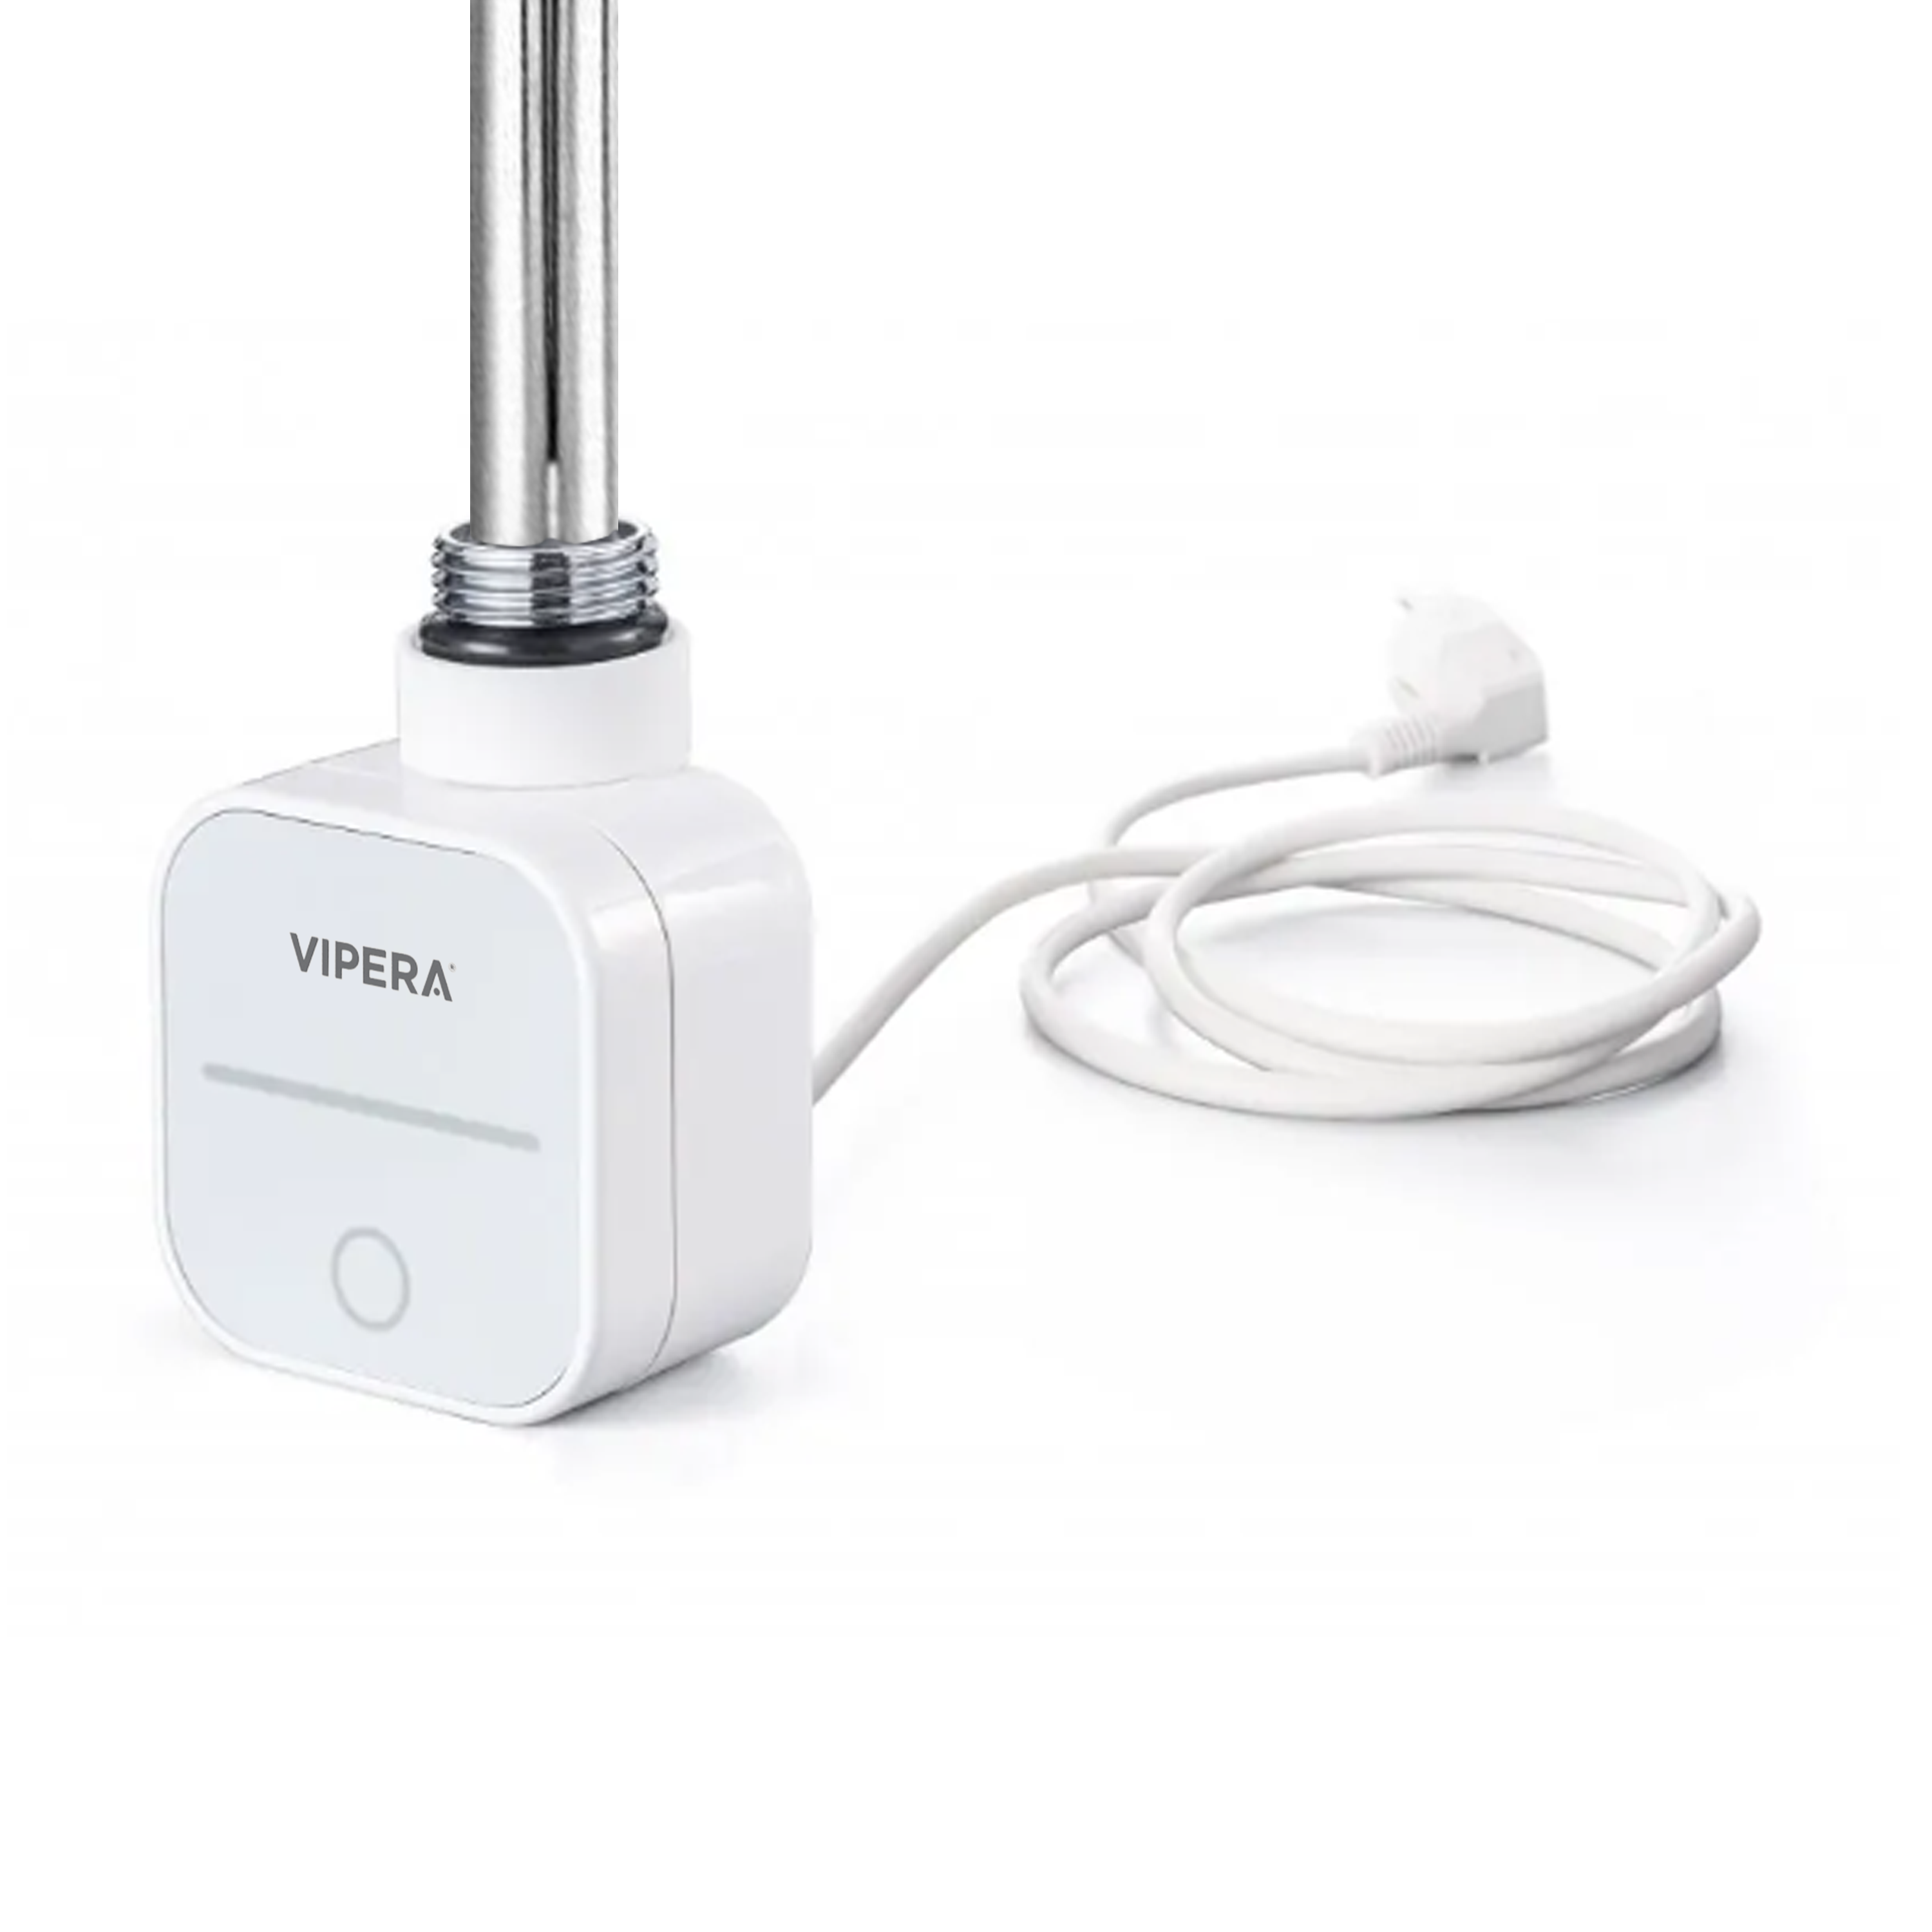 Vipera radiator thermostaat voor elektrische handdoekradiator 800W programmeerbaar wit